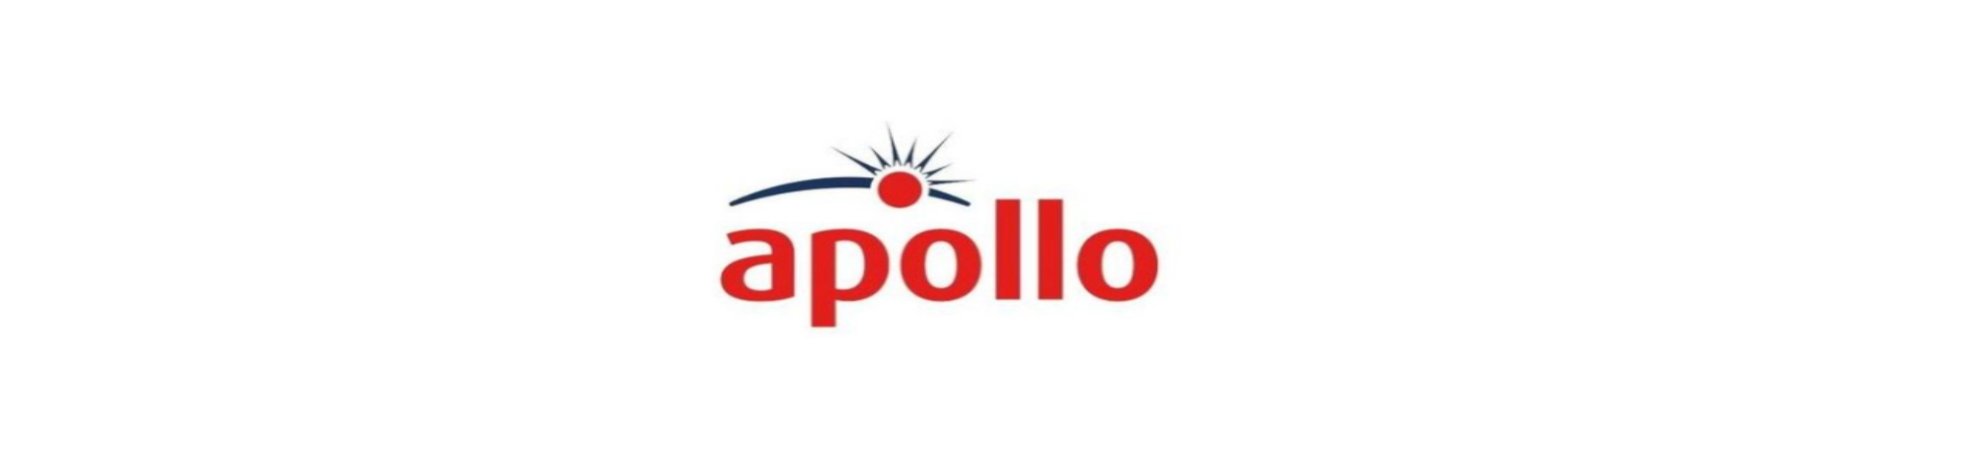 Apollo Fire Alarms - Fire Trade Supplies